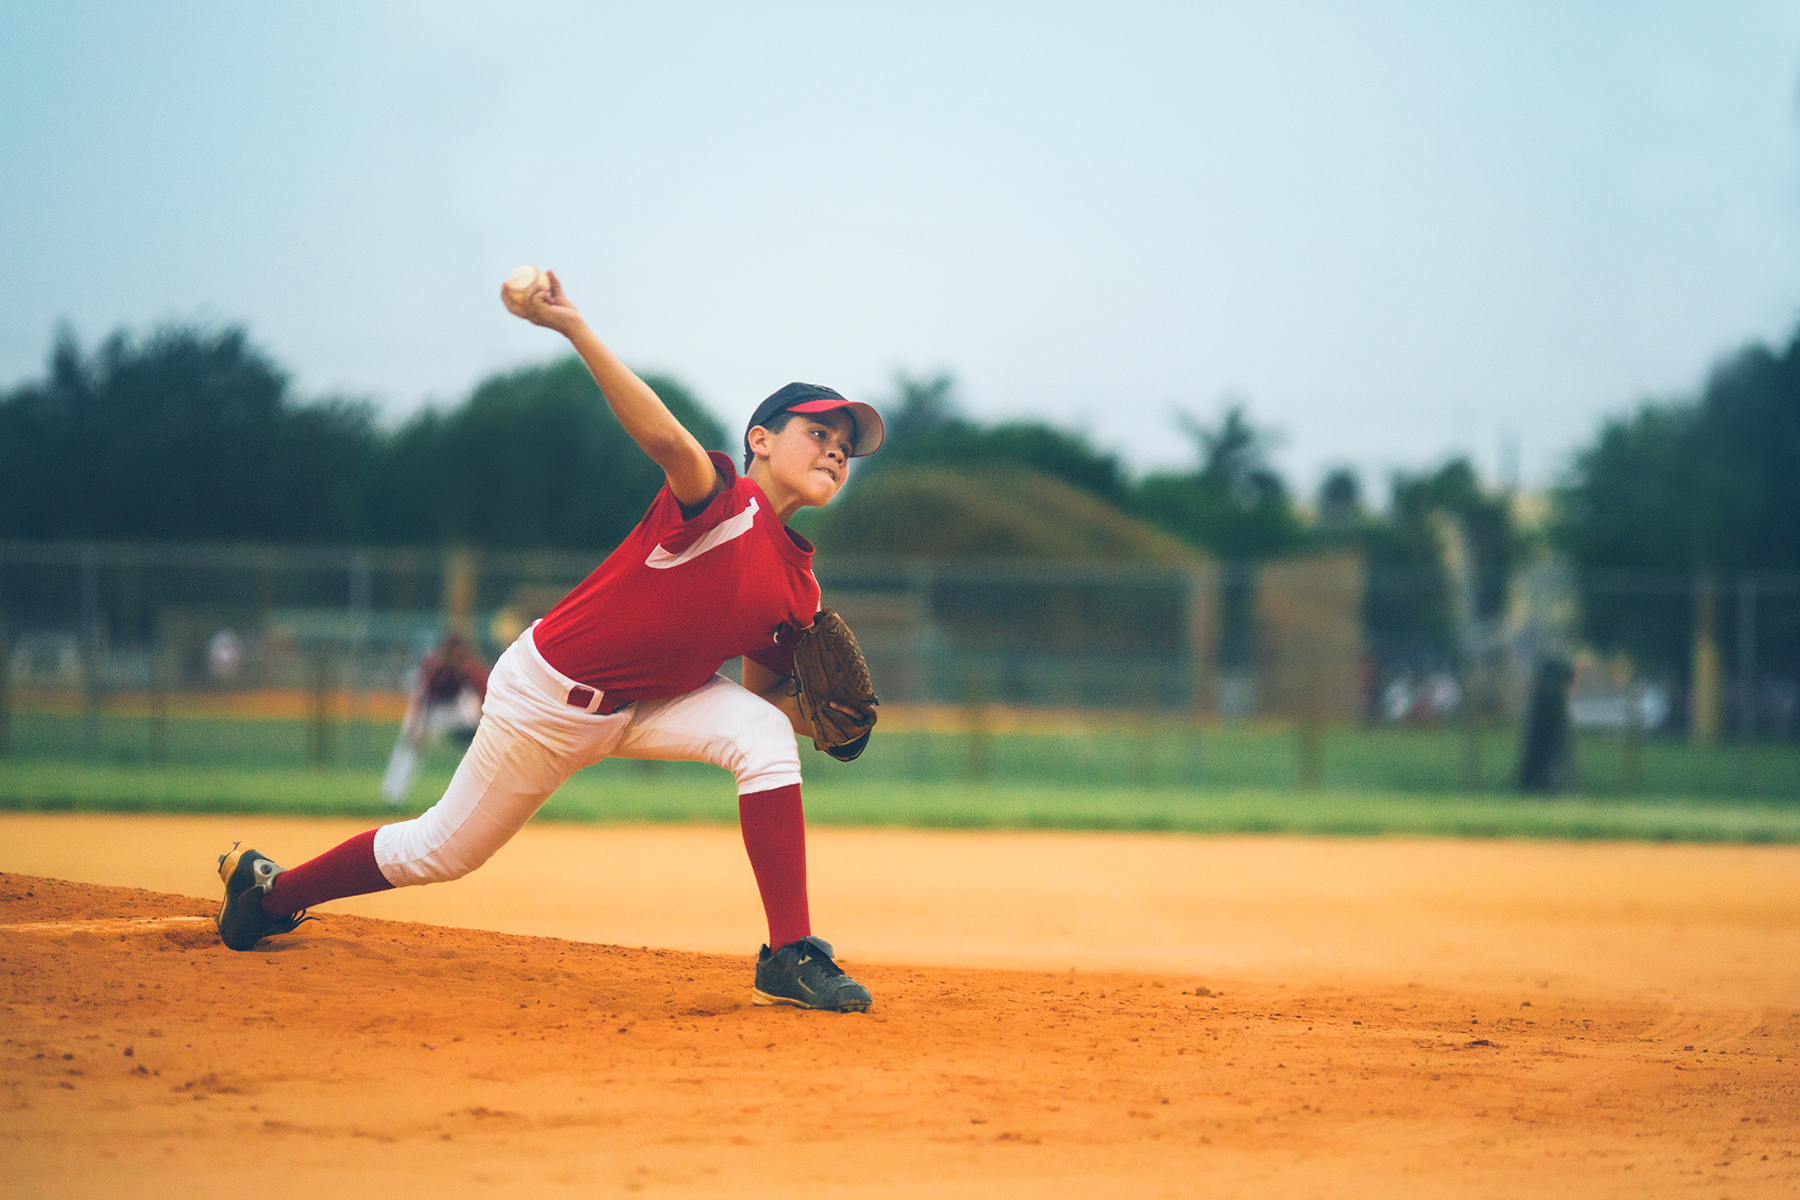 a kid pitching a baseball on a baseball field